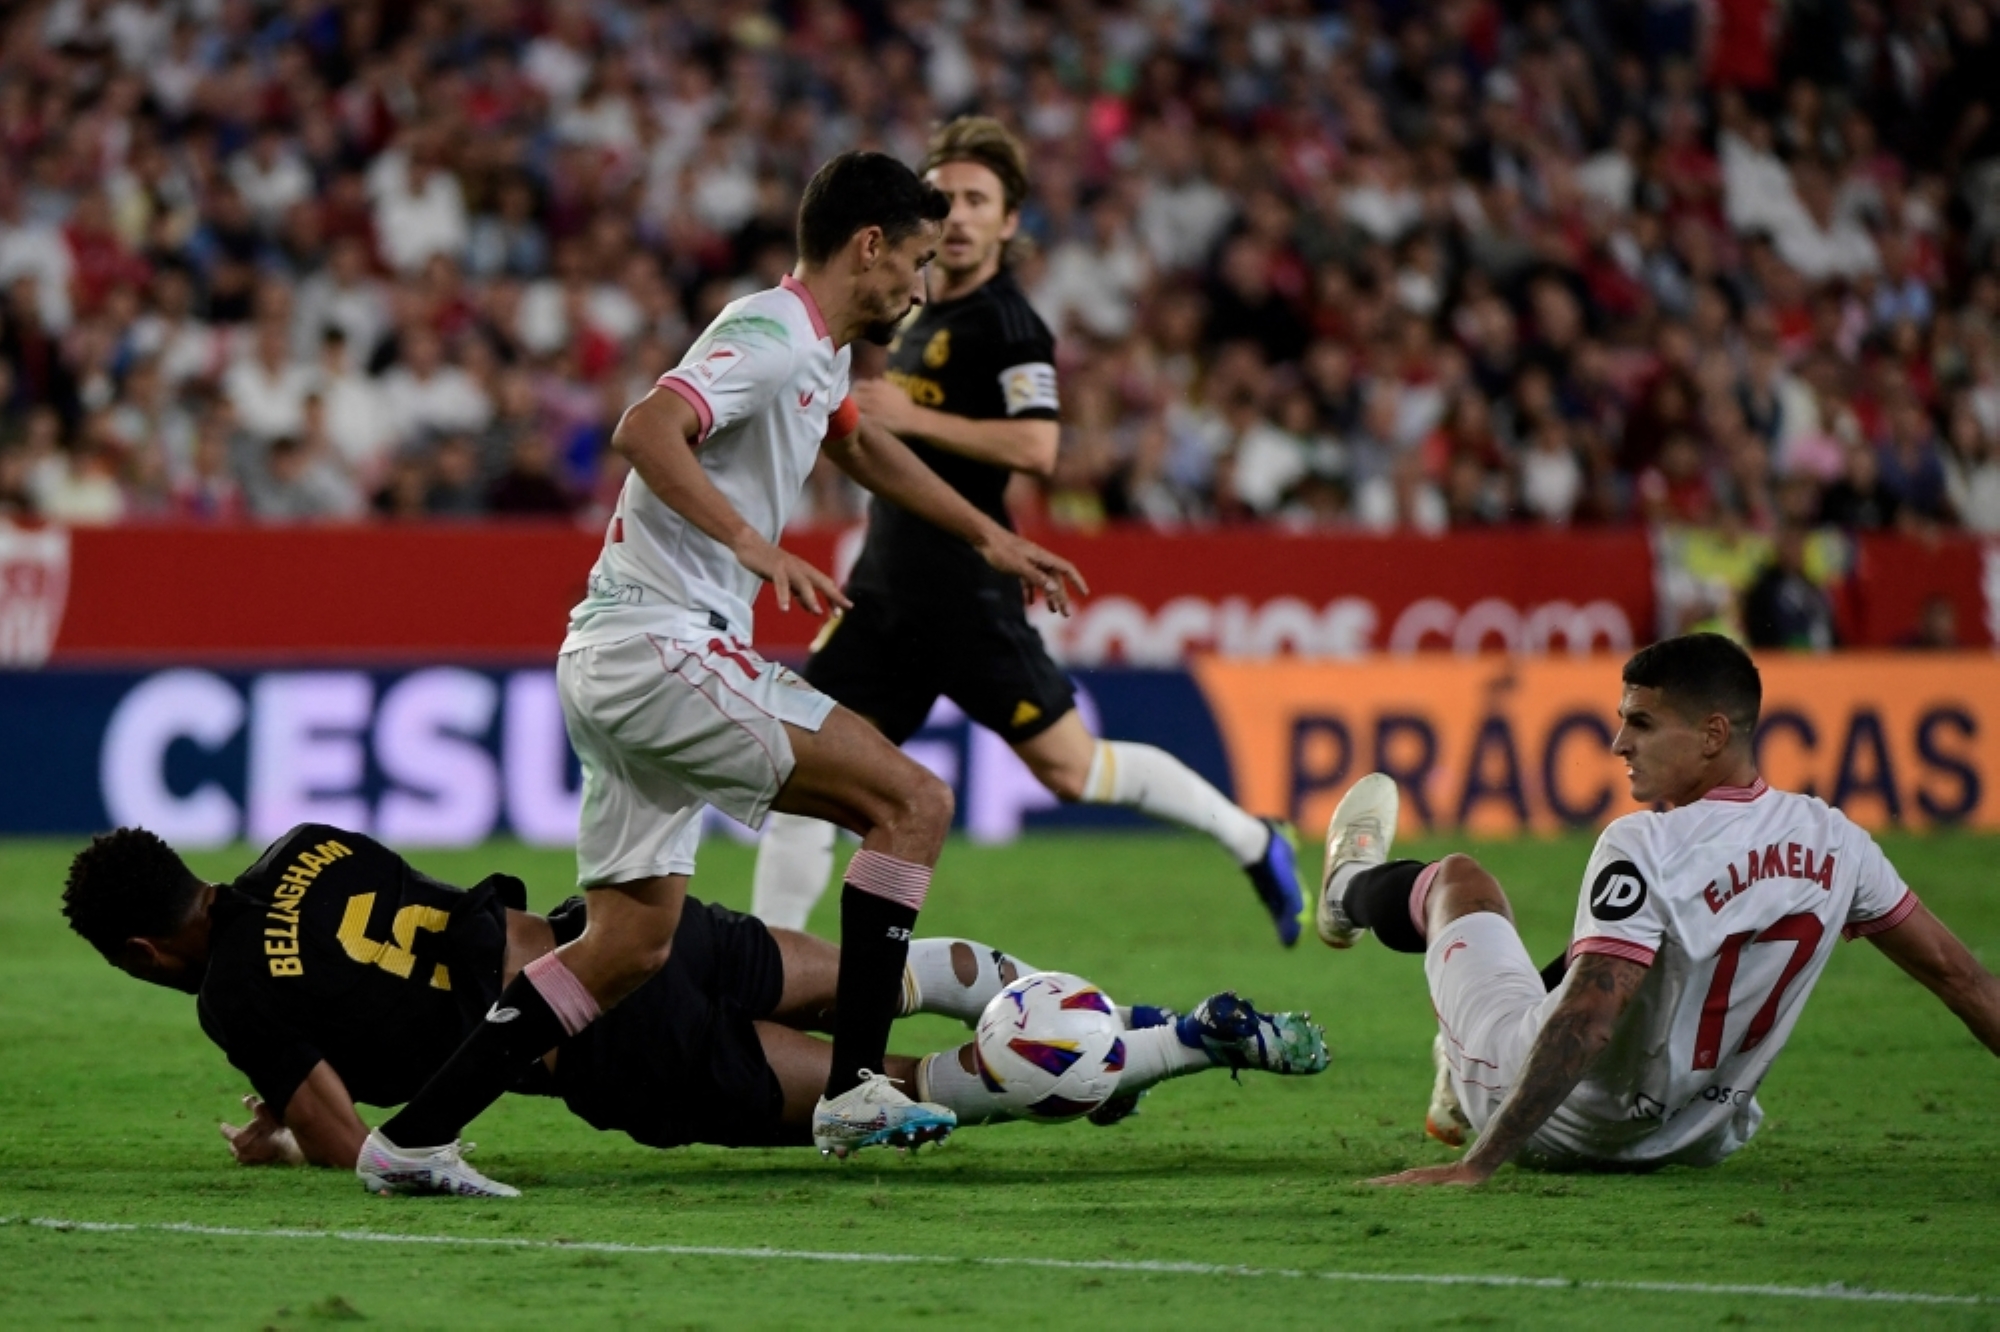 El Sevilla, de la mano de Ramos, empata con el líder Real Madrid, mientras el Atlético sube al segundo puesto